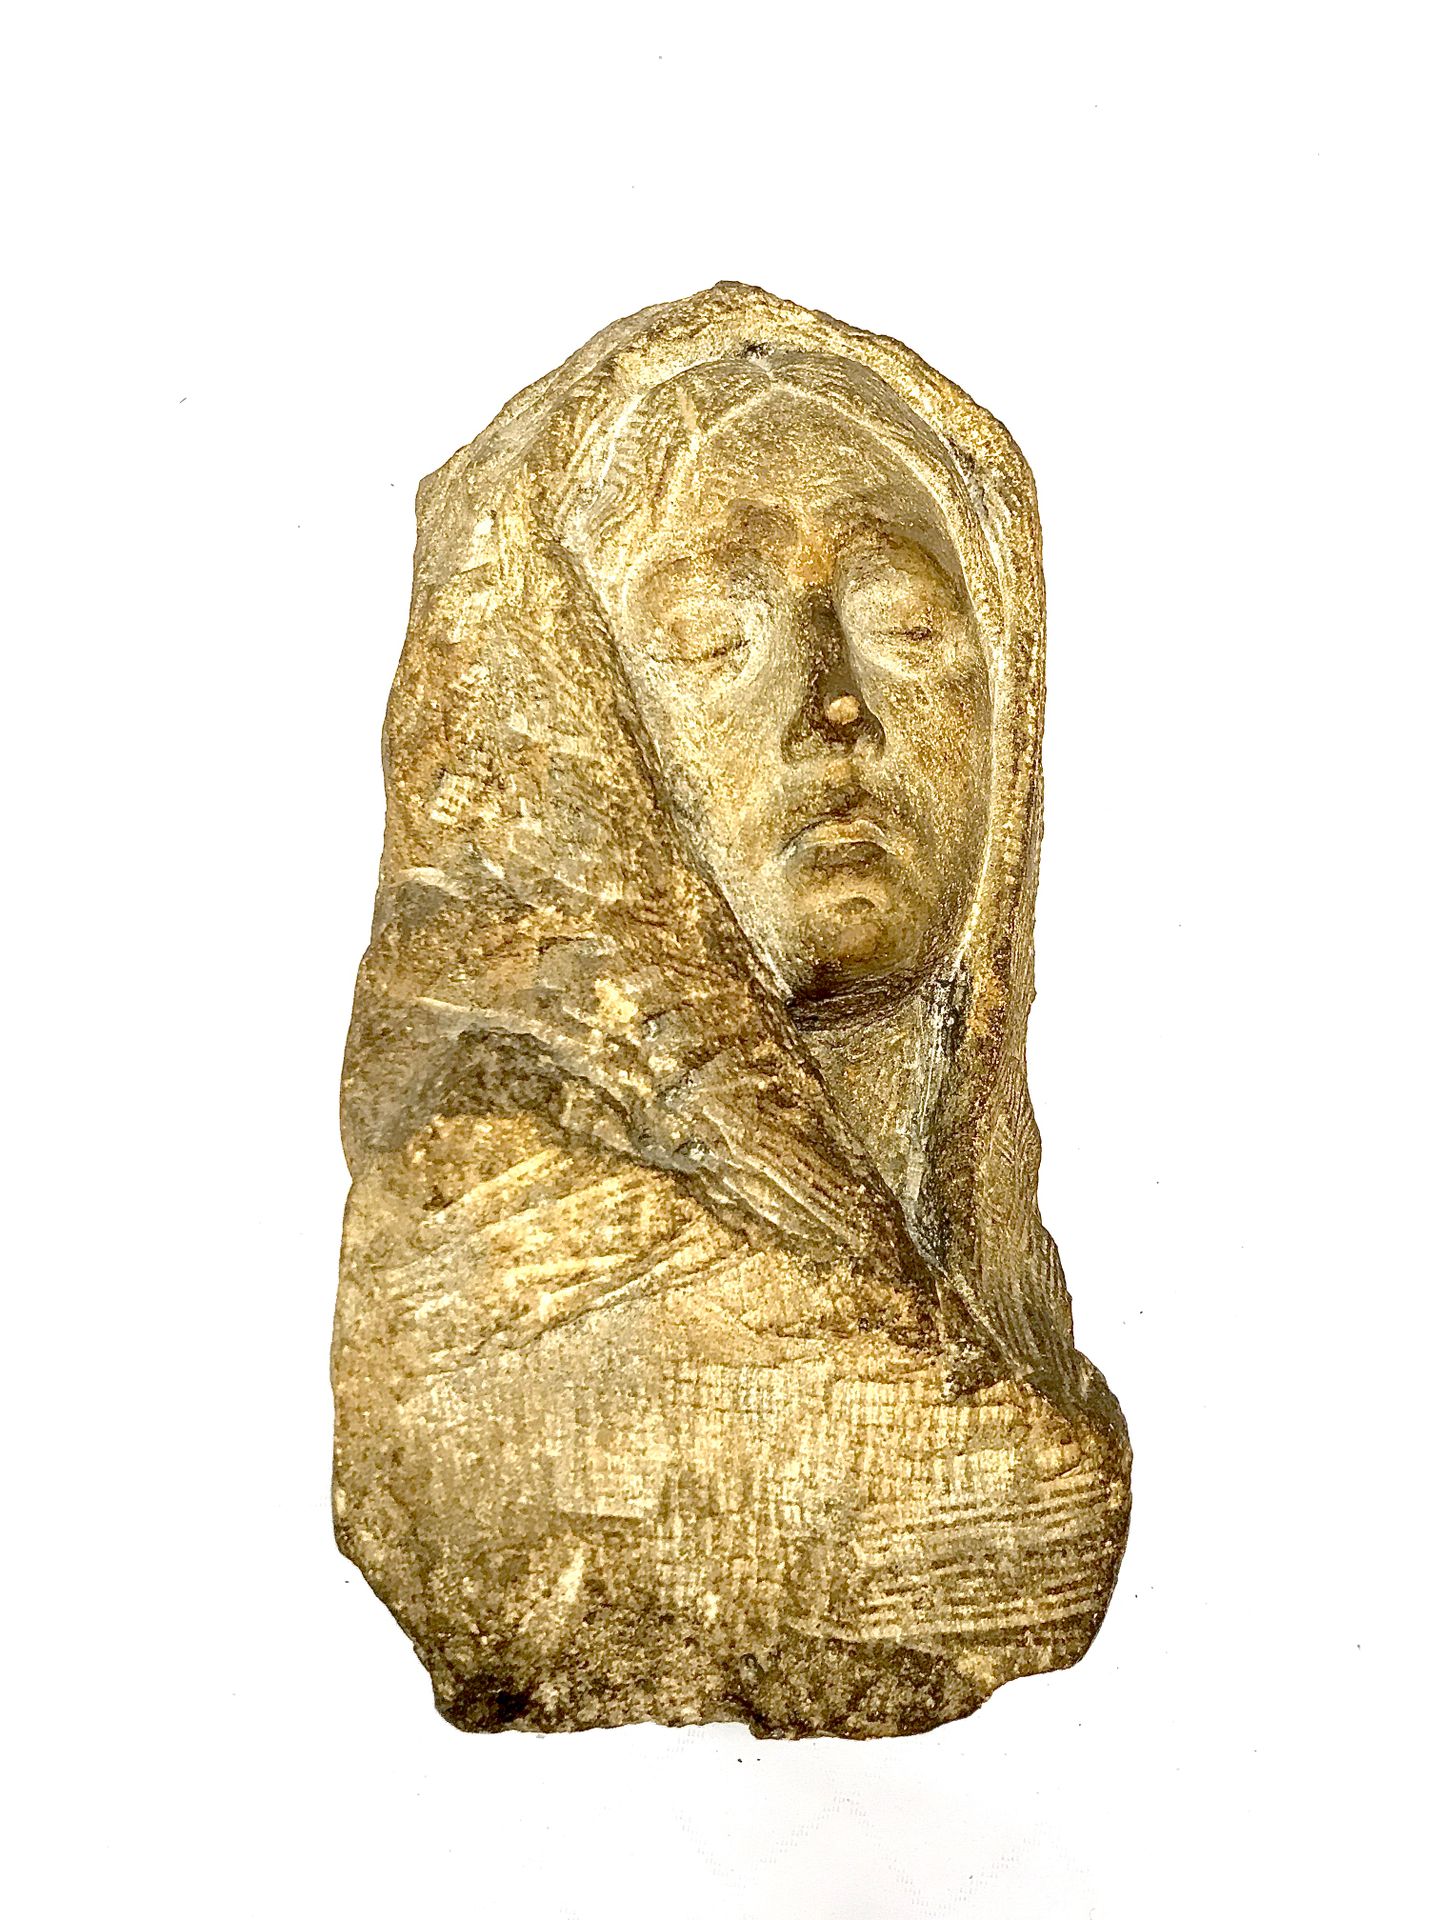 Null 19世纪的法国学校。一个戴面纱的女人的头。

石灰石雕塑。

浪漫主义时期。 

高15厘米。宽度15厘米。深度15厘米。